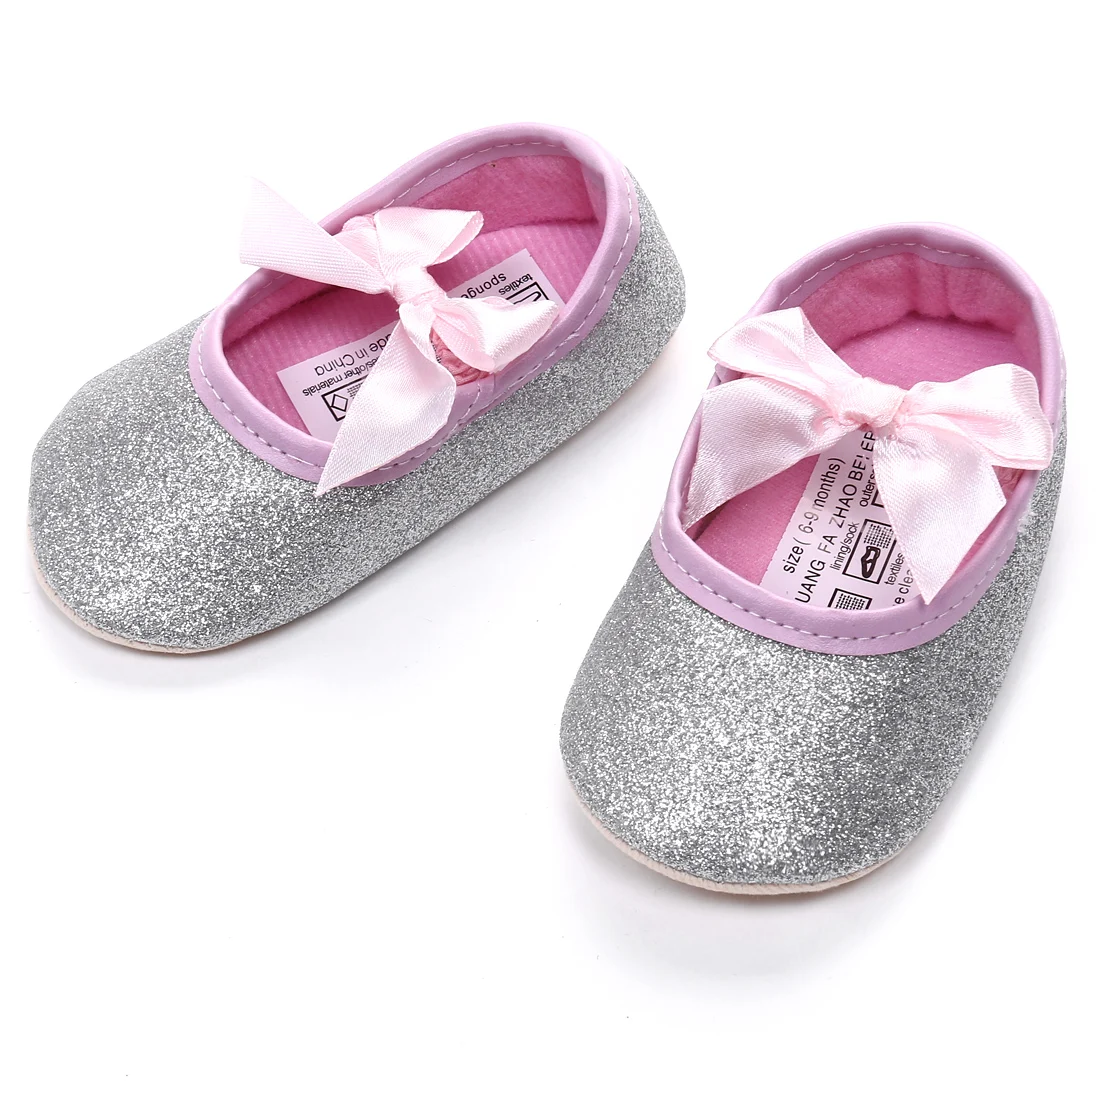 Обувь для маленьких девочек с мягкой подошвой; обувь для маленьких принцесс; цвет золотой, серебряный; мокасины для малышей; нескользящая хлопковая обувь для новорожденных; 0-18 месяцев - Цвет: Серебристый